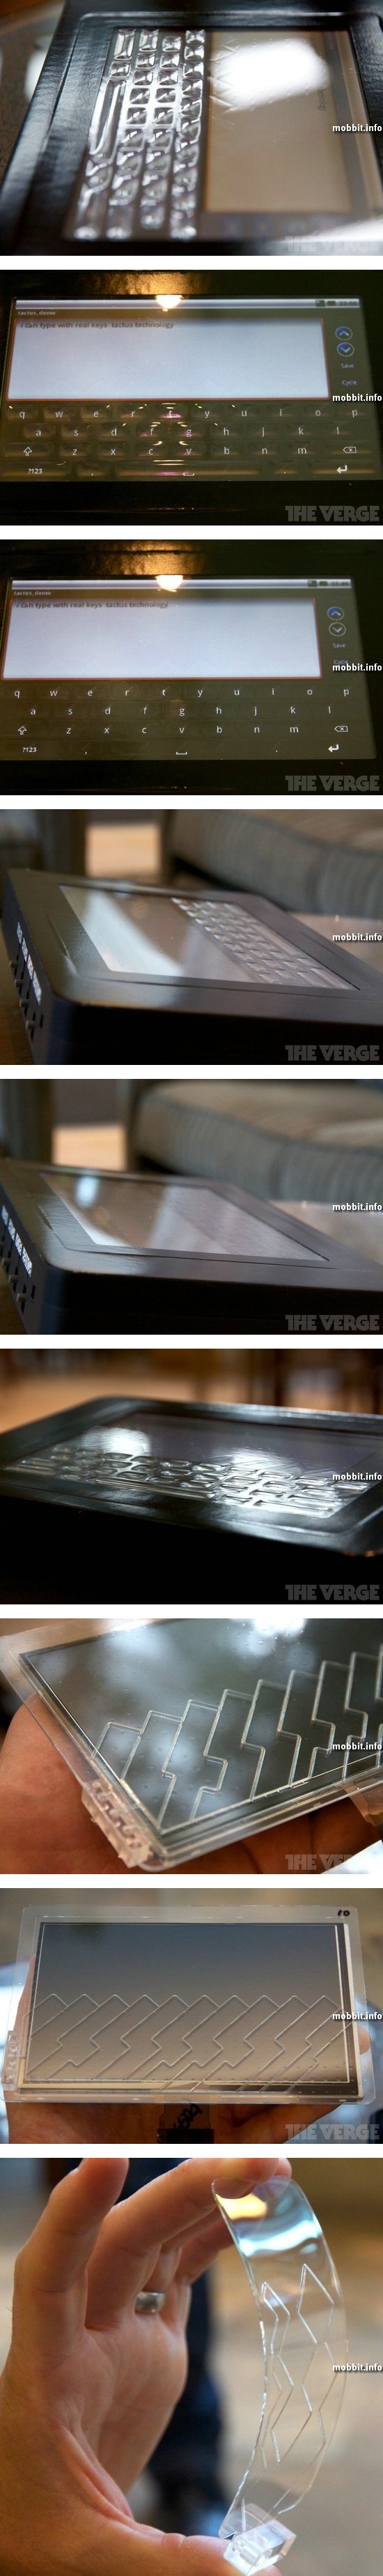 Сенсорный экран с возникающими и исчезающими физическими клавишами от Tactus